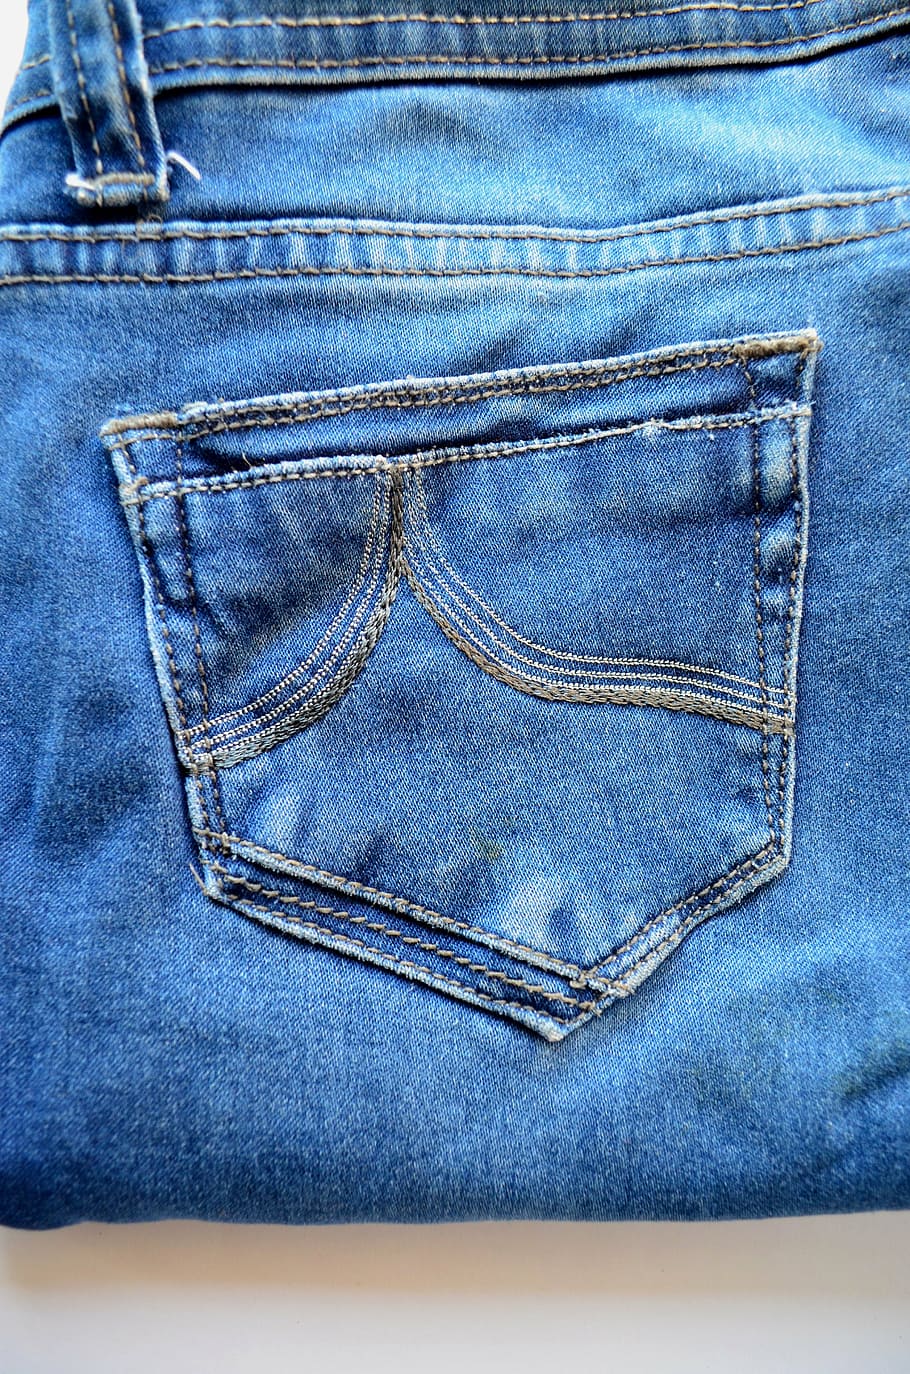 calças de ganga, jeans, azul, bolso, moda, vestuário, algodão, pano, calças, tecido